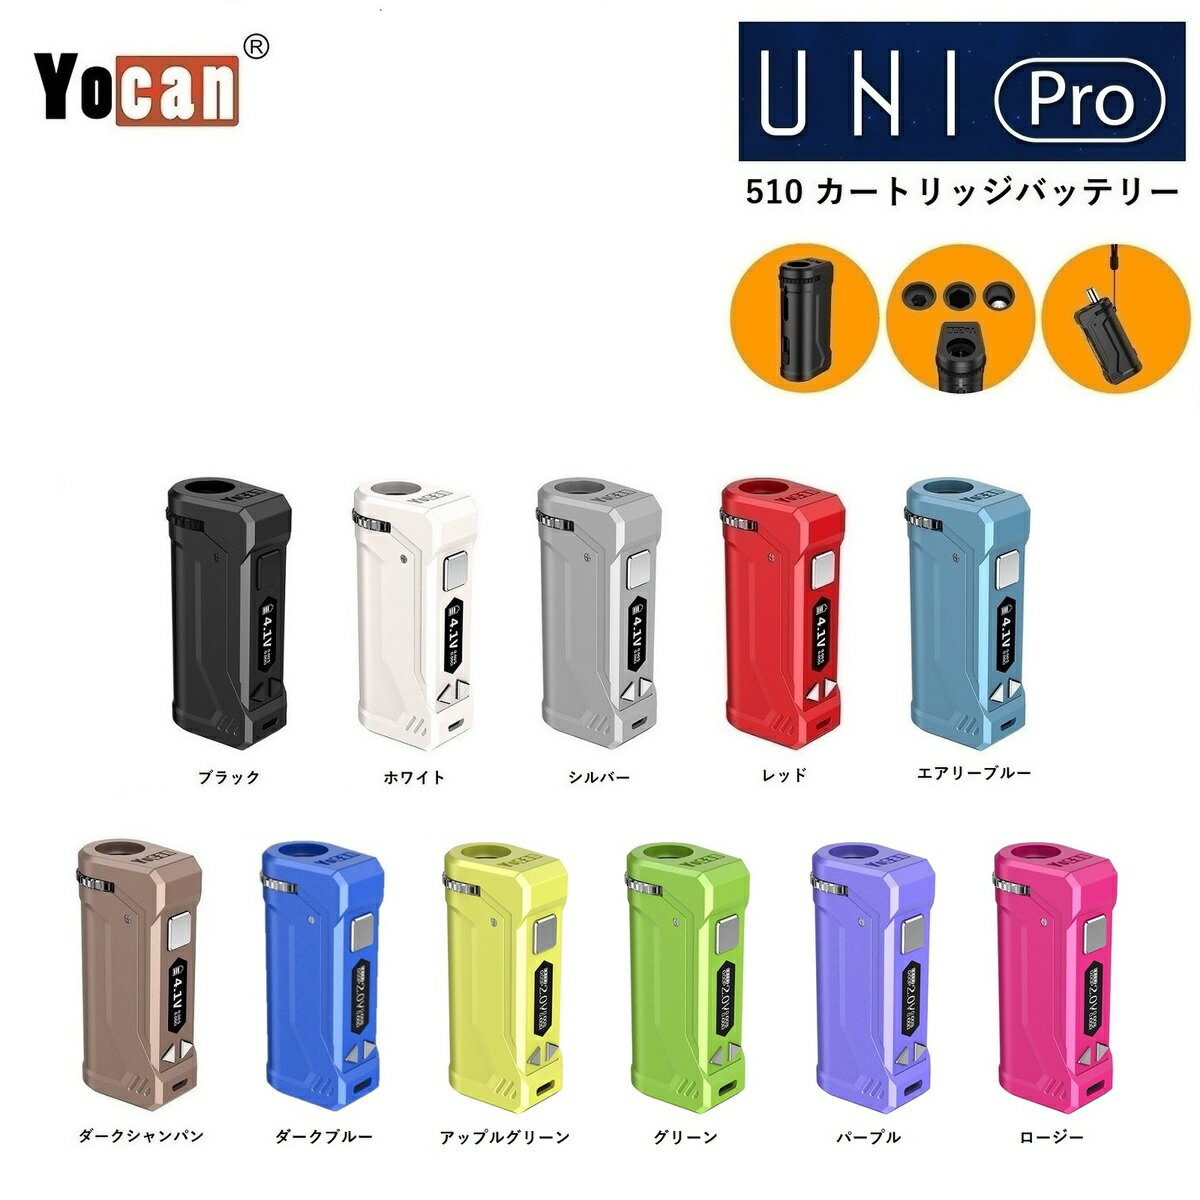 ヴェポライザー Yocan UNI Pro cartridge Battery BOX MOD 650mAh ヨーキャン ユニプロ 510 カートリッジバッテリー …